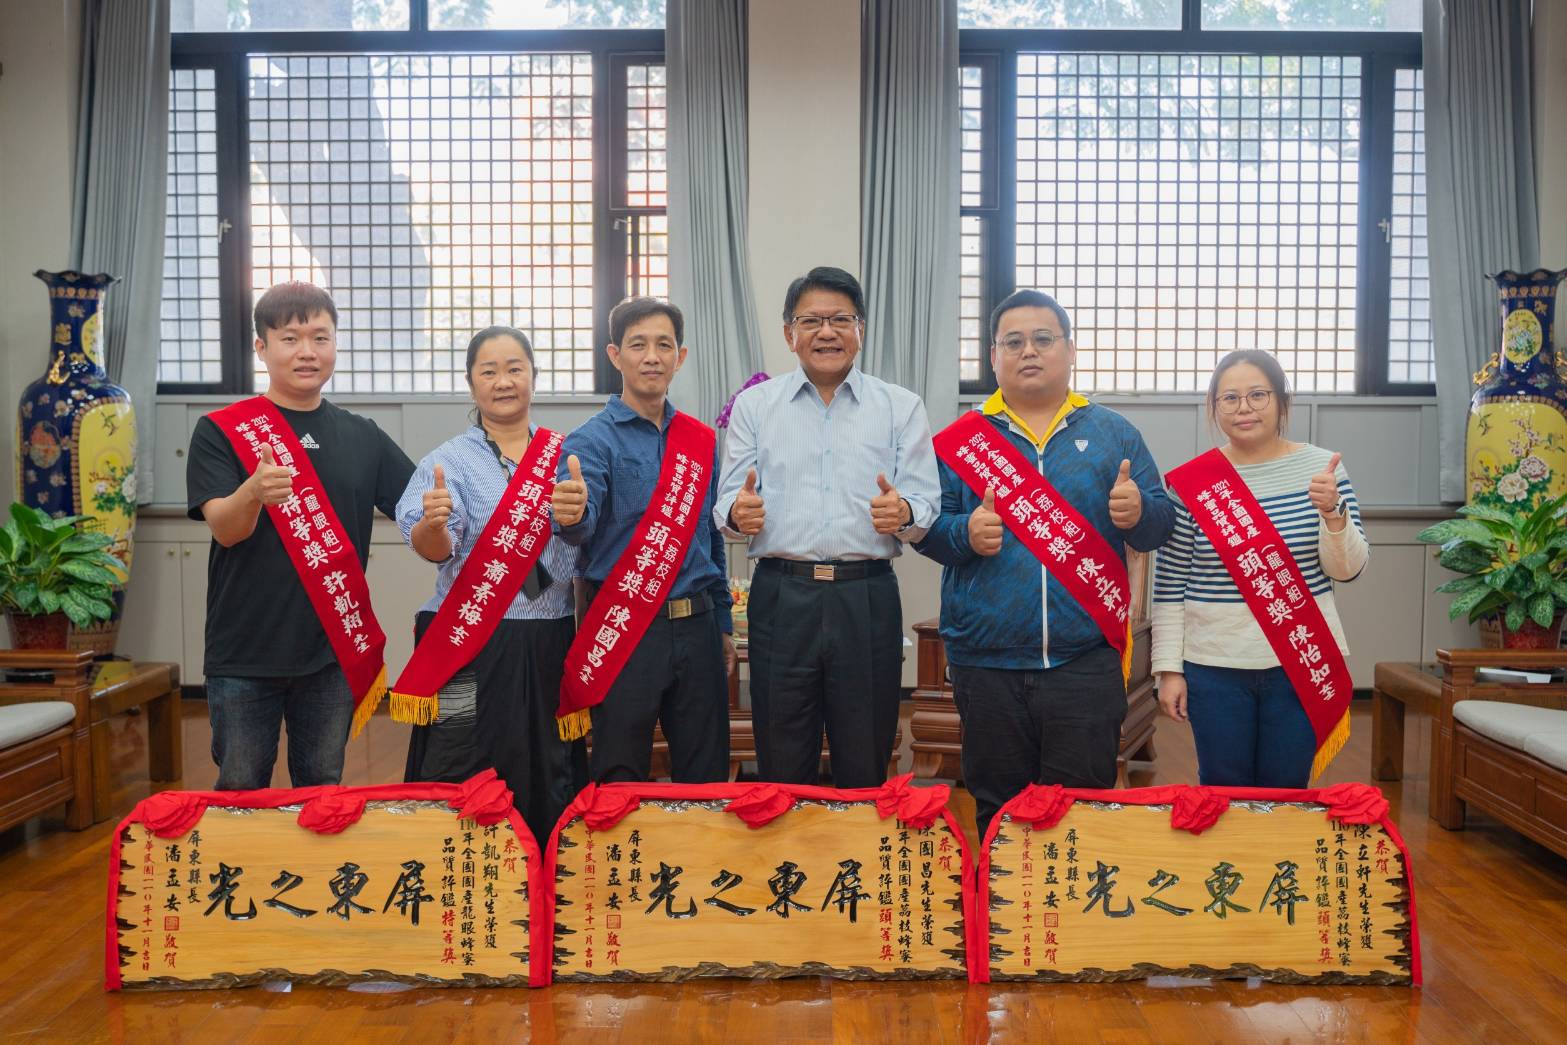 Huyện trưởng Phan Mạnh An (thứ 3 bên trái) trao tằng hoành phi cho 5 thợ nuôi ong mật giành giải cao trong cuộc đánh giá chất lượng mật ong hoa nhãn và hoa vải năm 2021 toàn Đài Loan. (Nguồn ảnh: Chính quyền huyện Bình Đông)